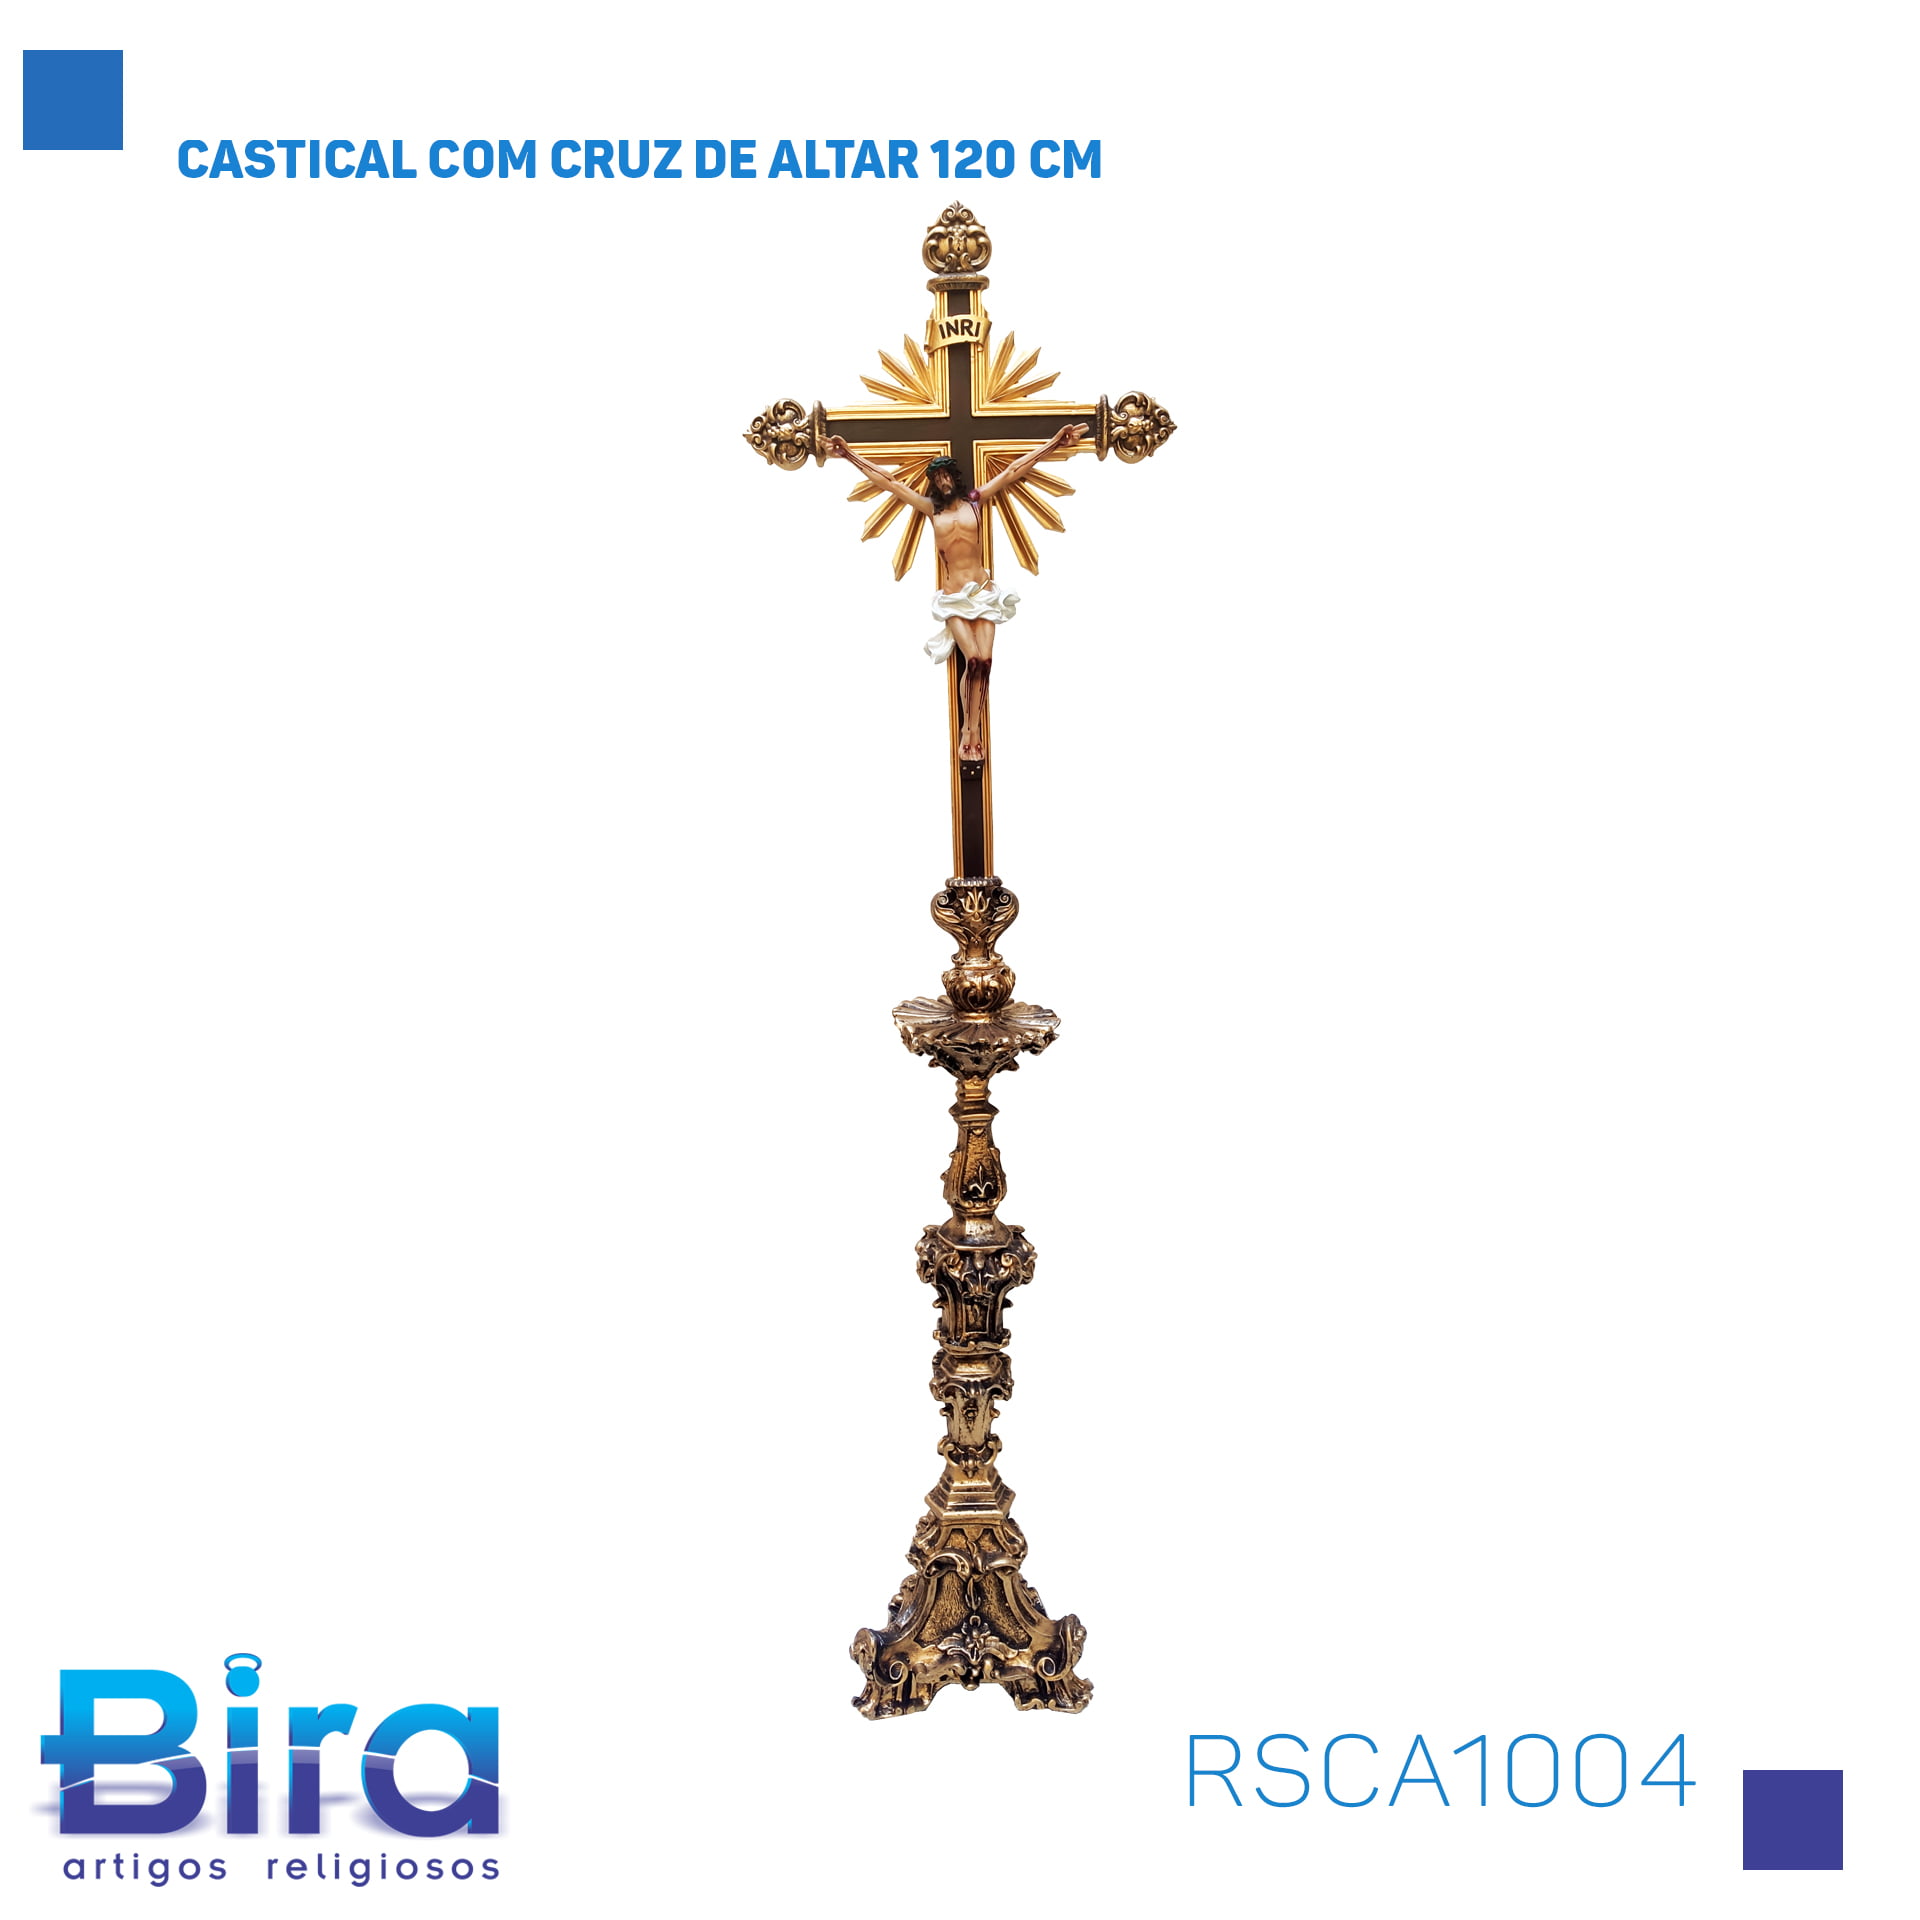 Bira Artigos Religiosos - CASTICAL COM CRUZ DE ALTAR 120 CM CÓD.: RSCA1004